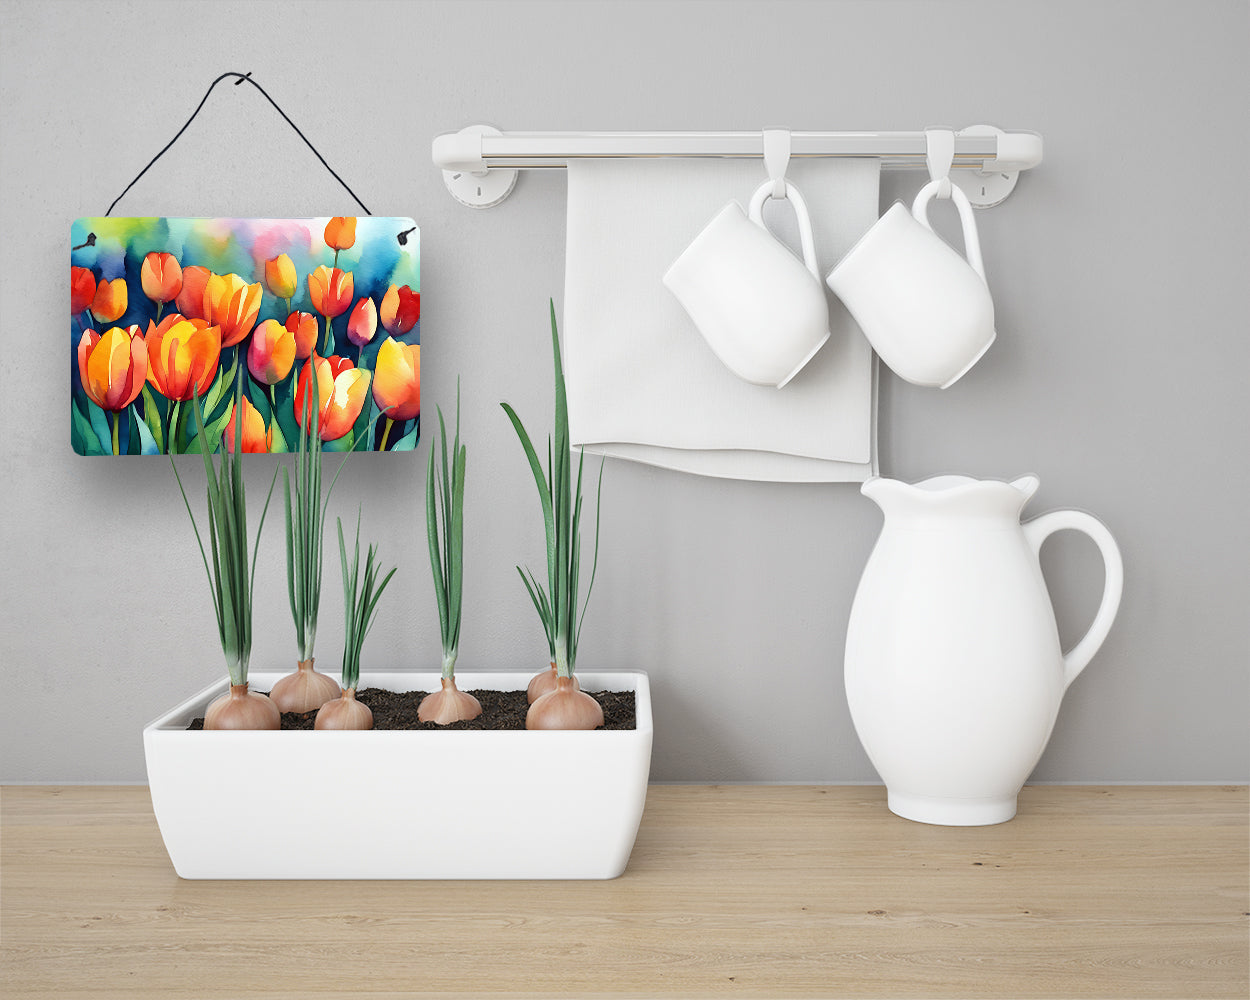 Tulips in Watercolor Wall or Door Hanging Prints